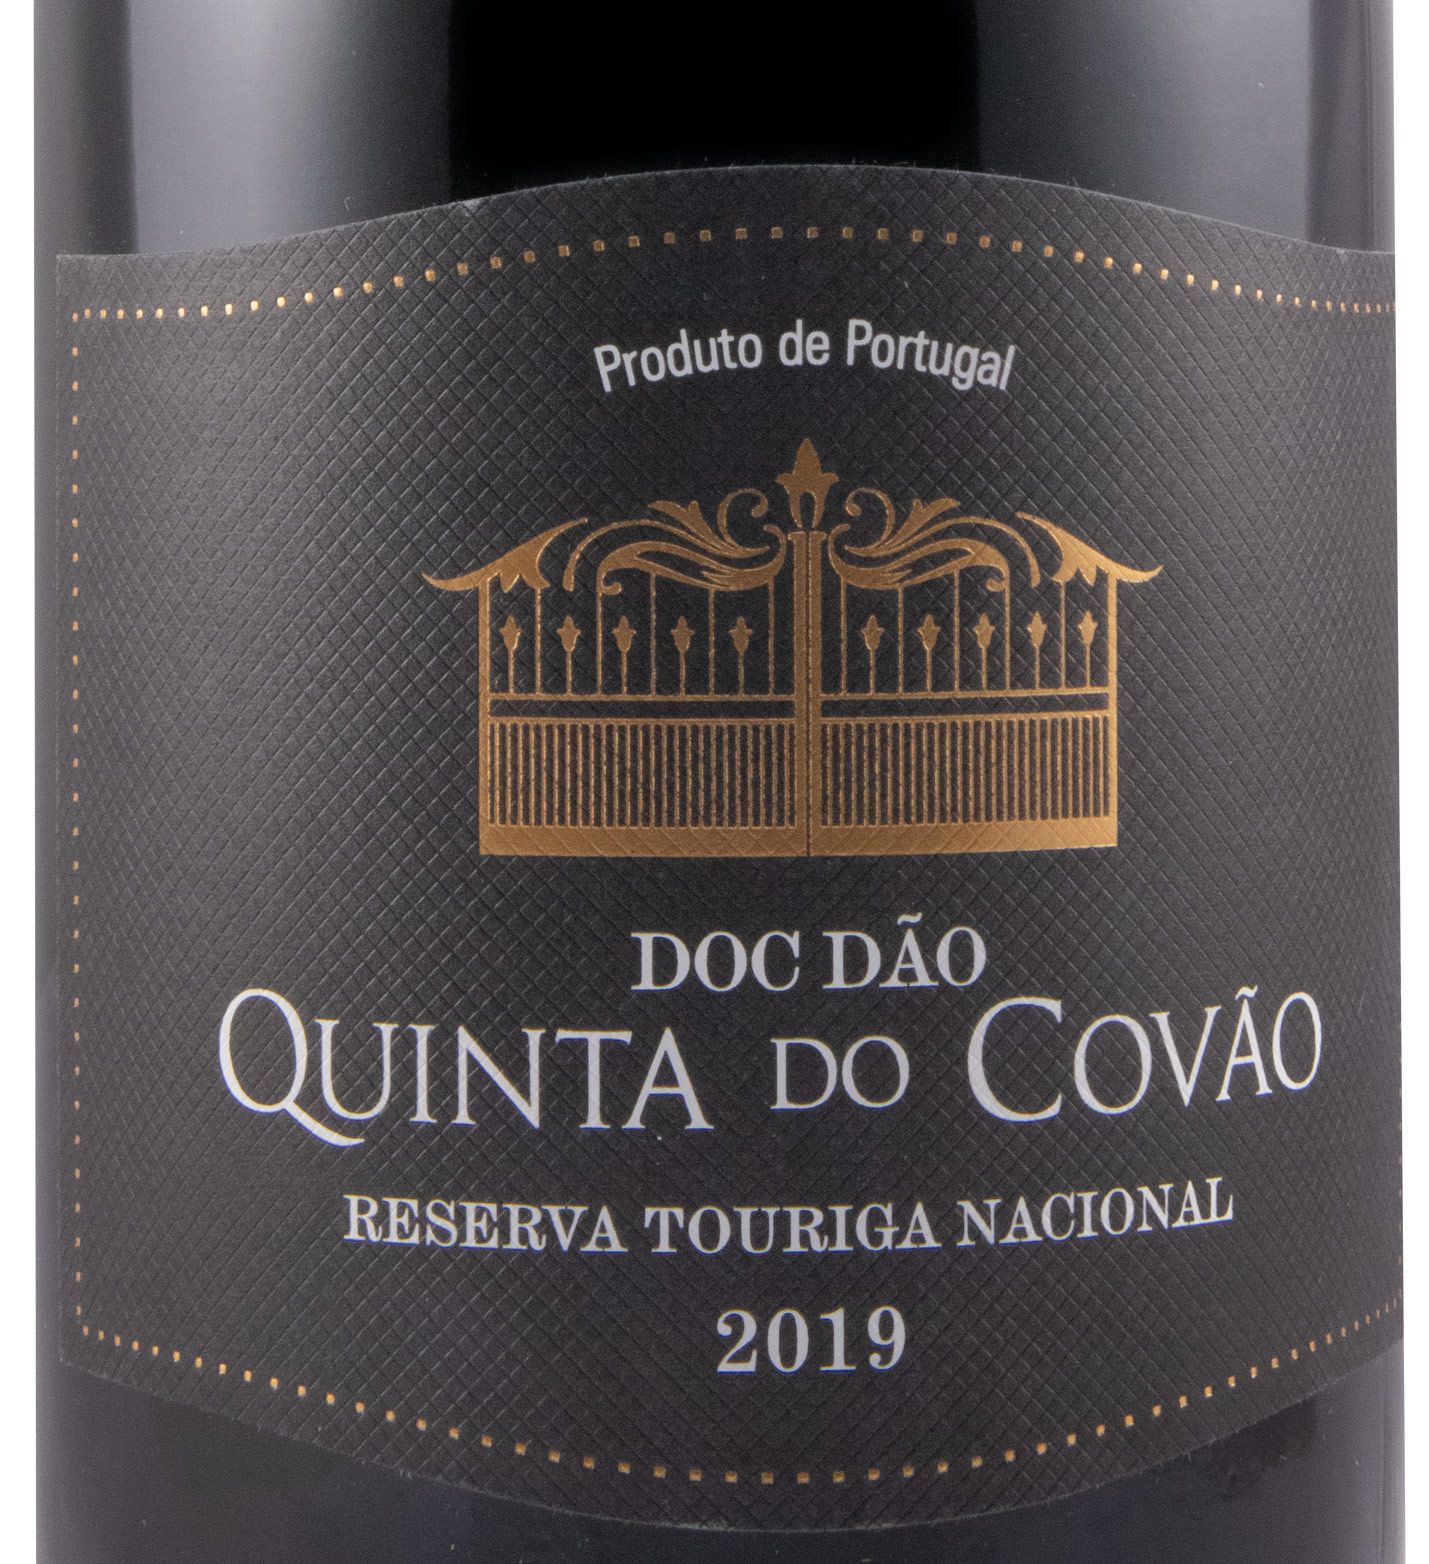 2019 Quinta do Covão Touriga Nacional Reserva red